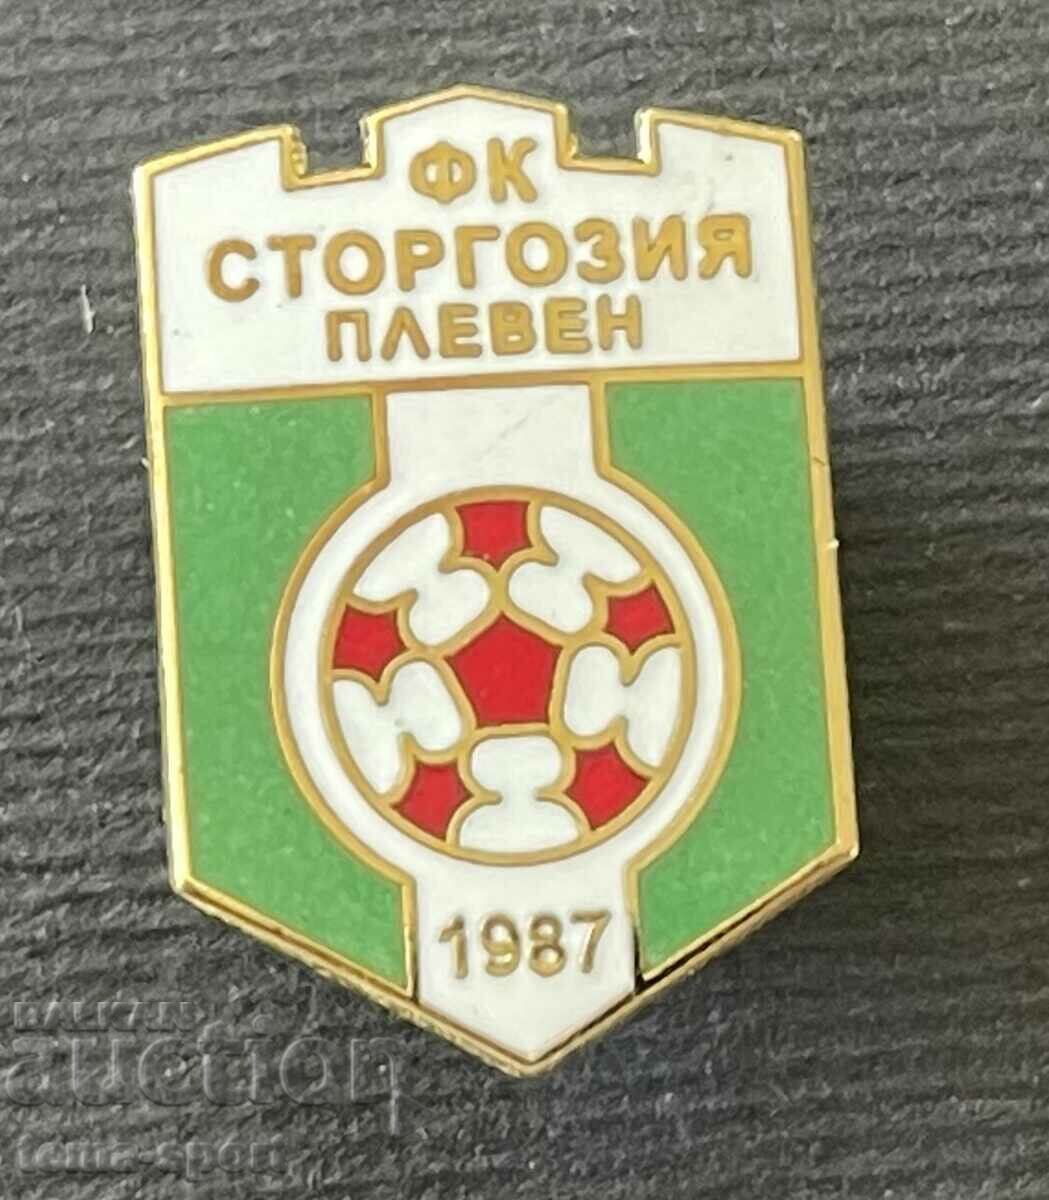 686 Bulgaria semnează emailul clubului de fotbal Storgozia Pleven